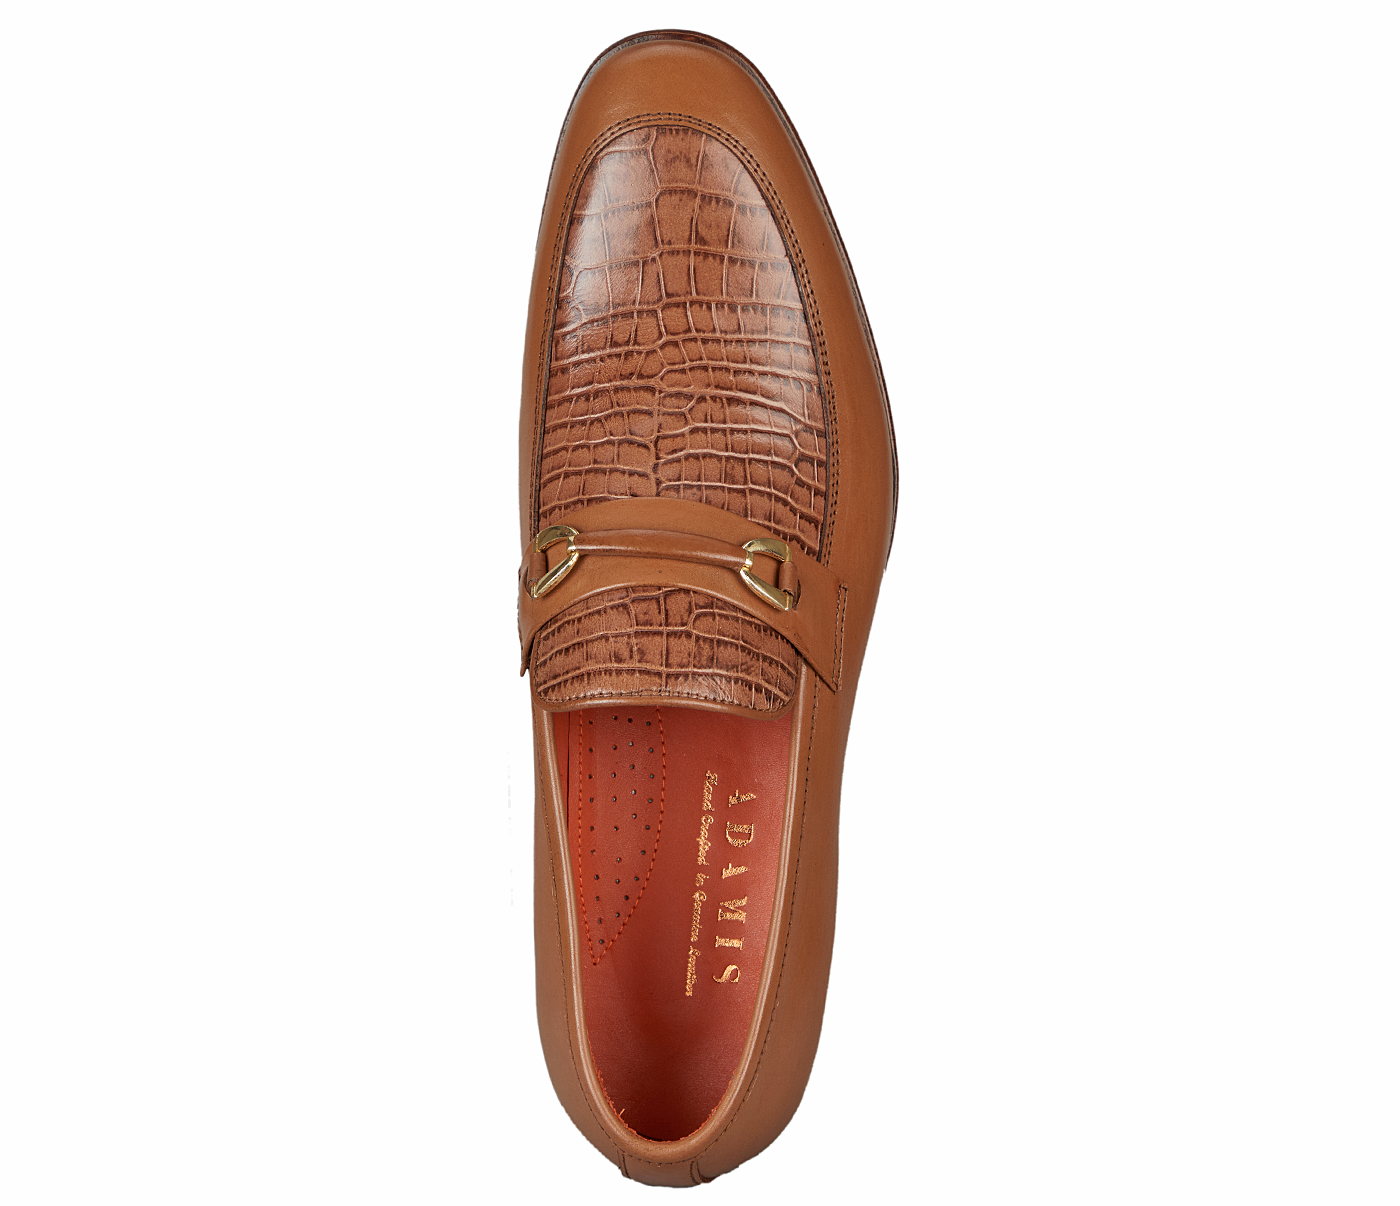 PF52-Adamis Pure Leather Footwear For Men- - Tan